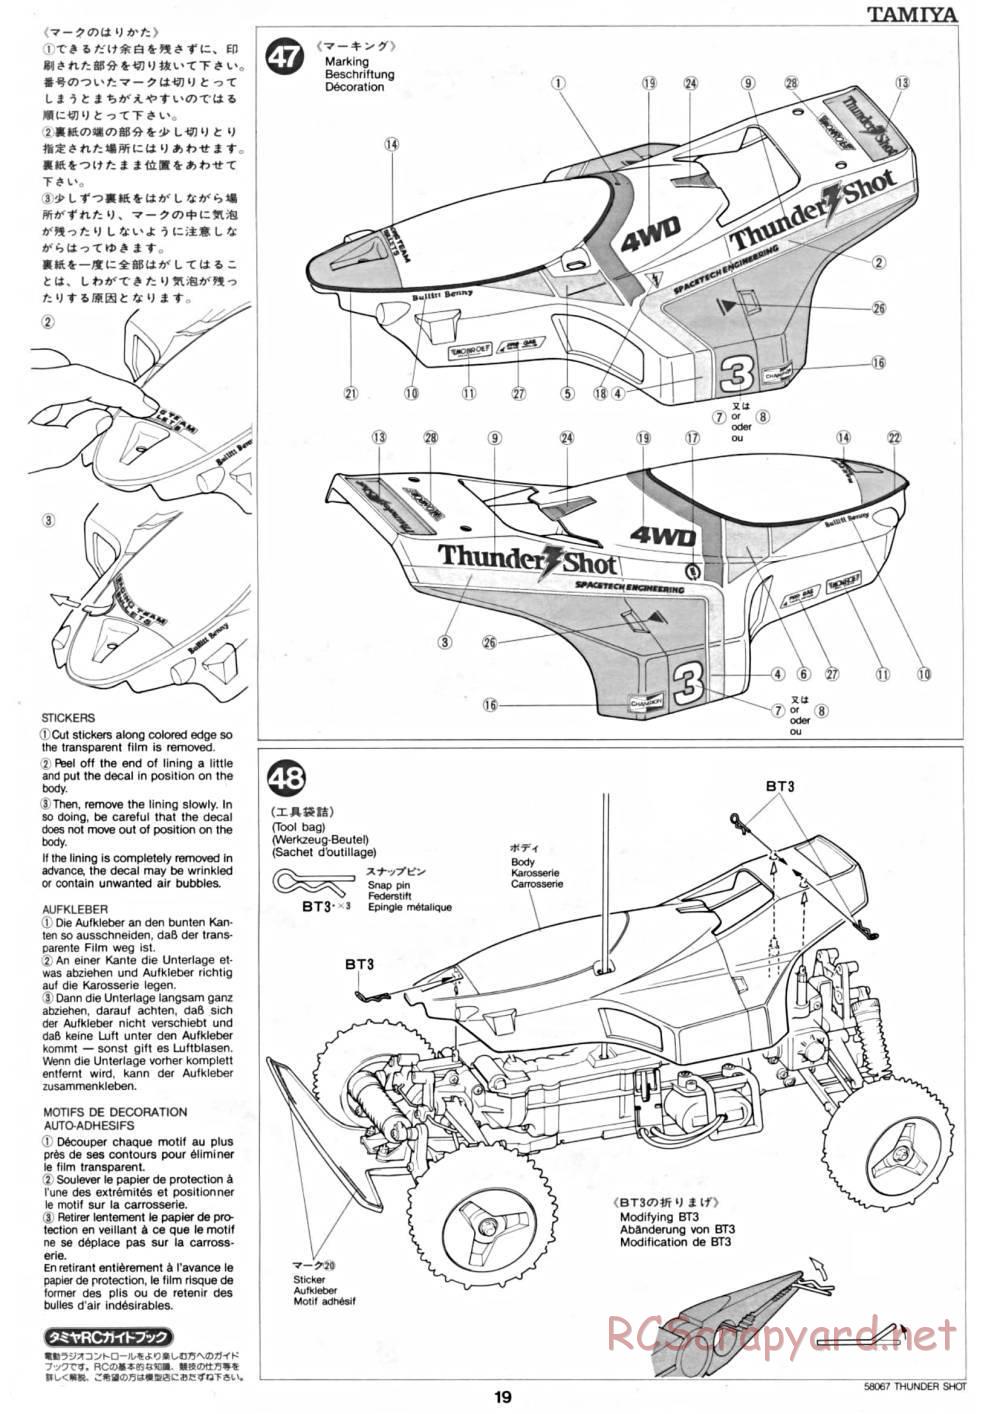 Tamiya - Thunder Shot - 58067 - Manual - Page 19